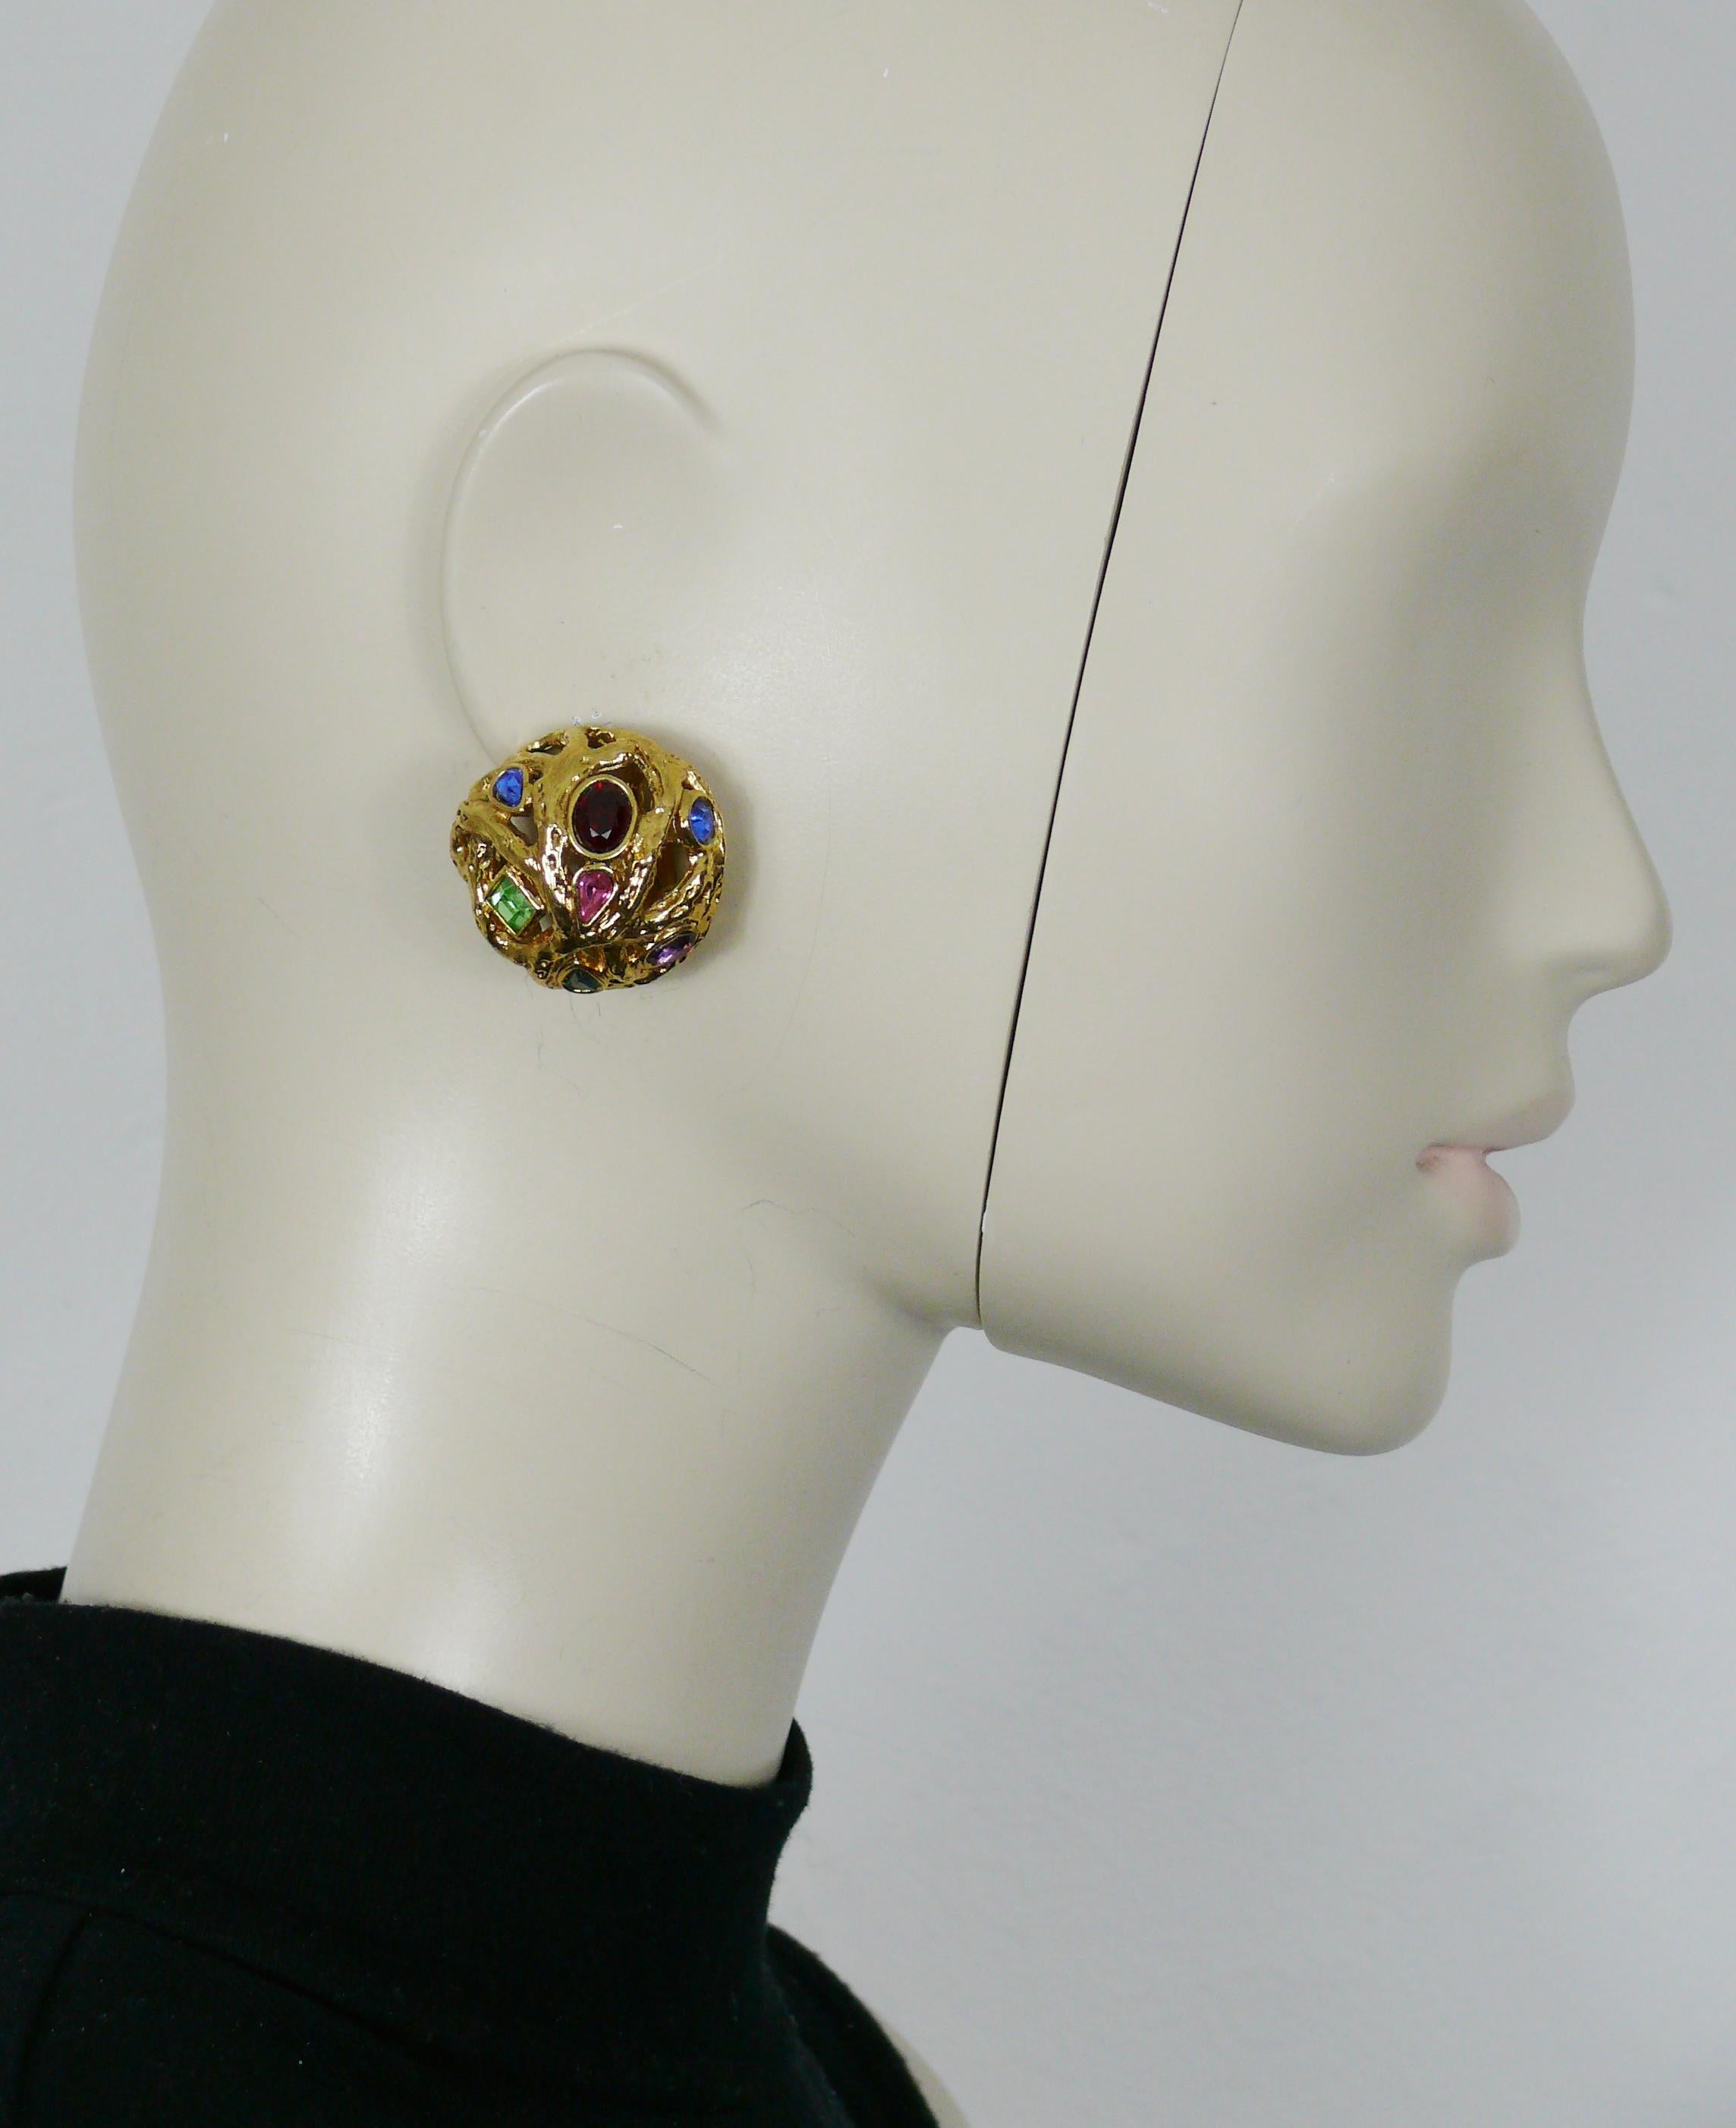 YVES SAINT LAURENT Vintage goldfarbene gewölbte Ohrringe mit einem wunderschönen durchbrochenen Design aus verschlungenen Zweigen, die mit mehrfarbigen Kristallen verziert sind.

Geprägtes YSL Made in France.

Ungefähre Maße: Durchmesser ca. 3 cm